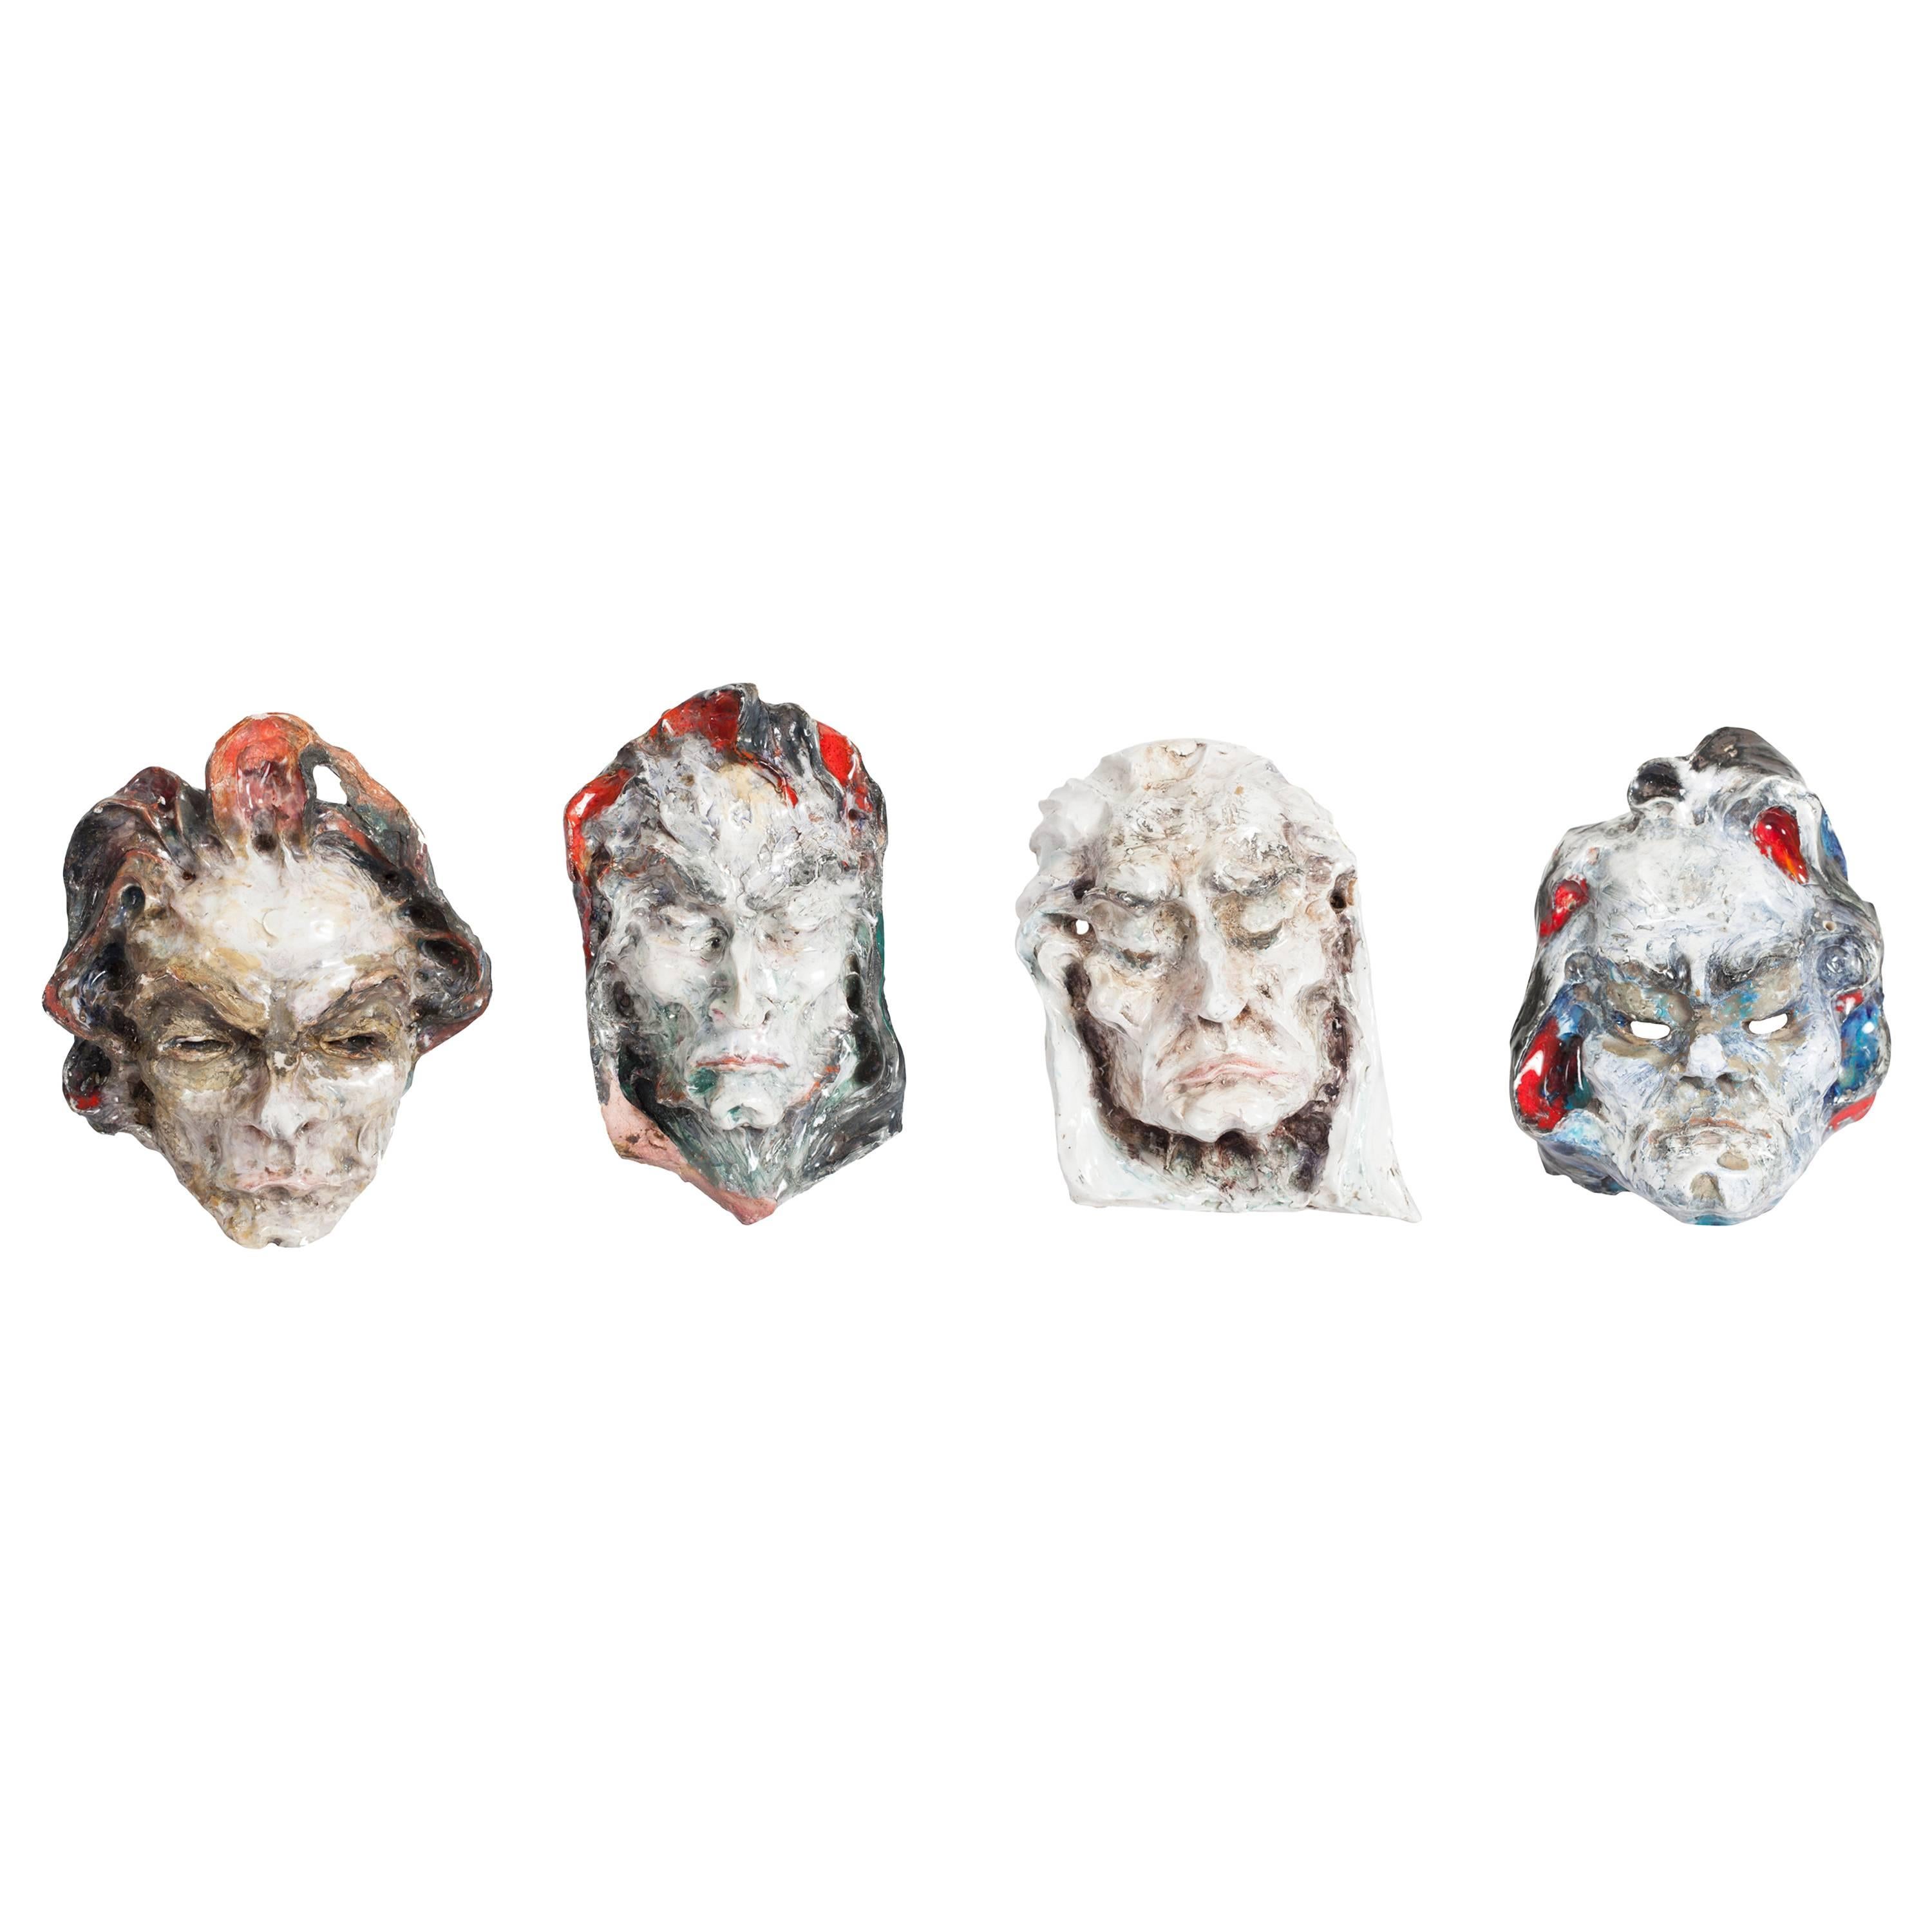 Ceramic Masks by Fontana, Italy